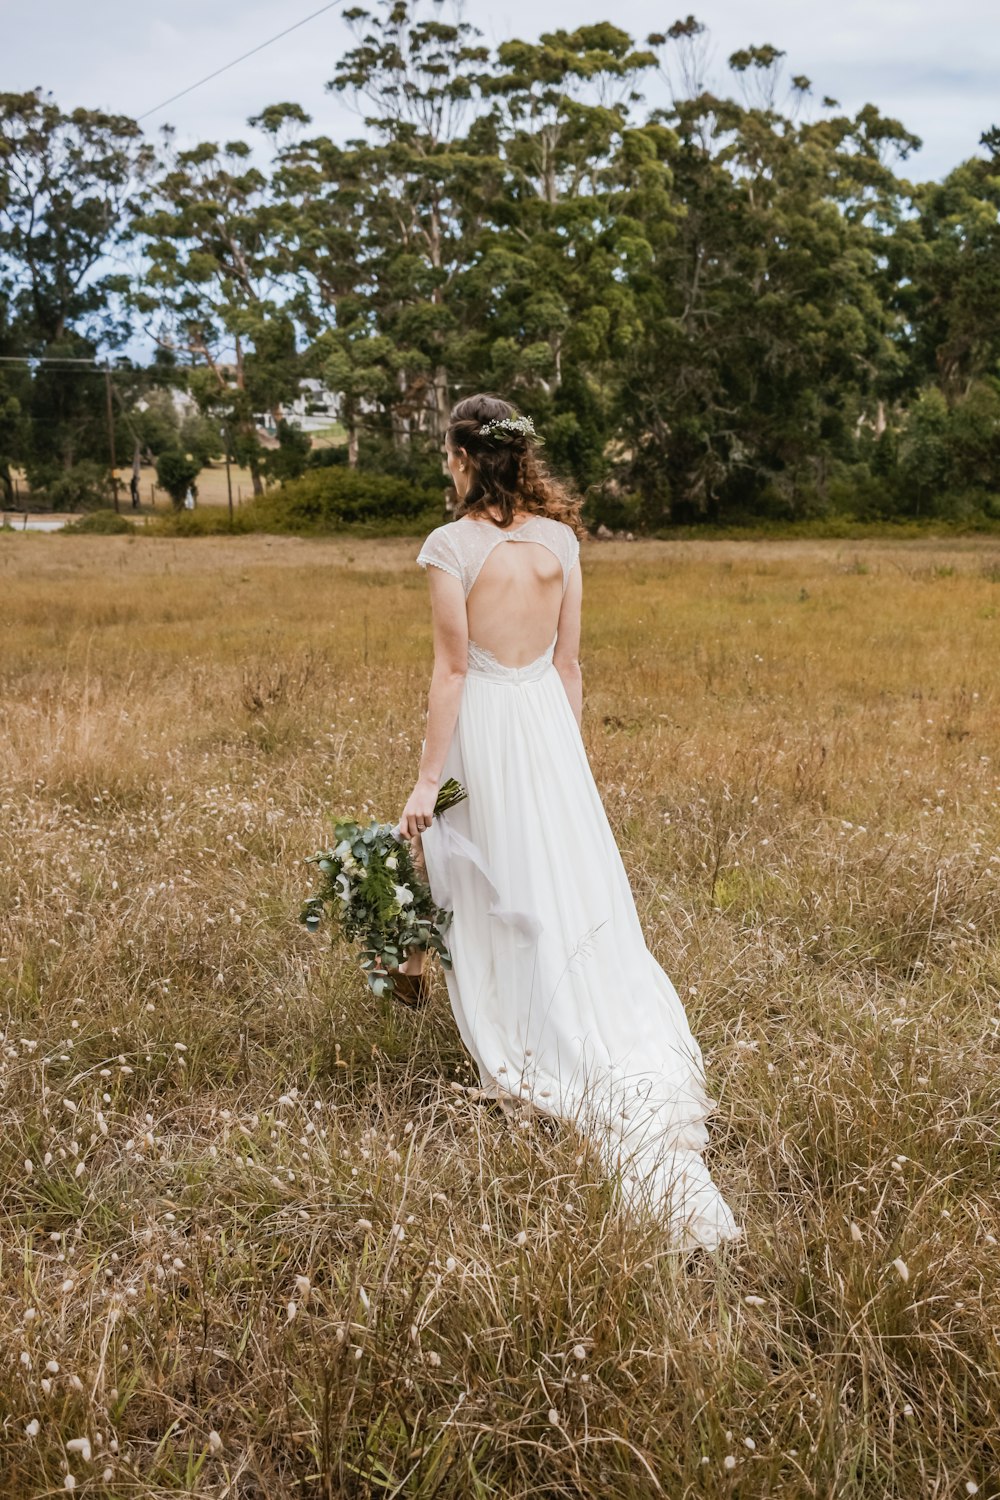 Foto Mujer con vestido blanco sin espalda con ramo de flores blancas y verdes – Imagen gratis en